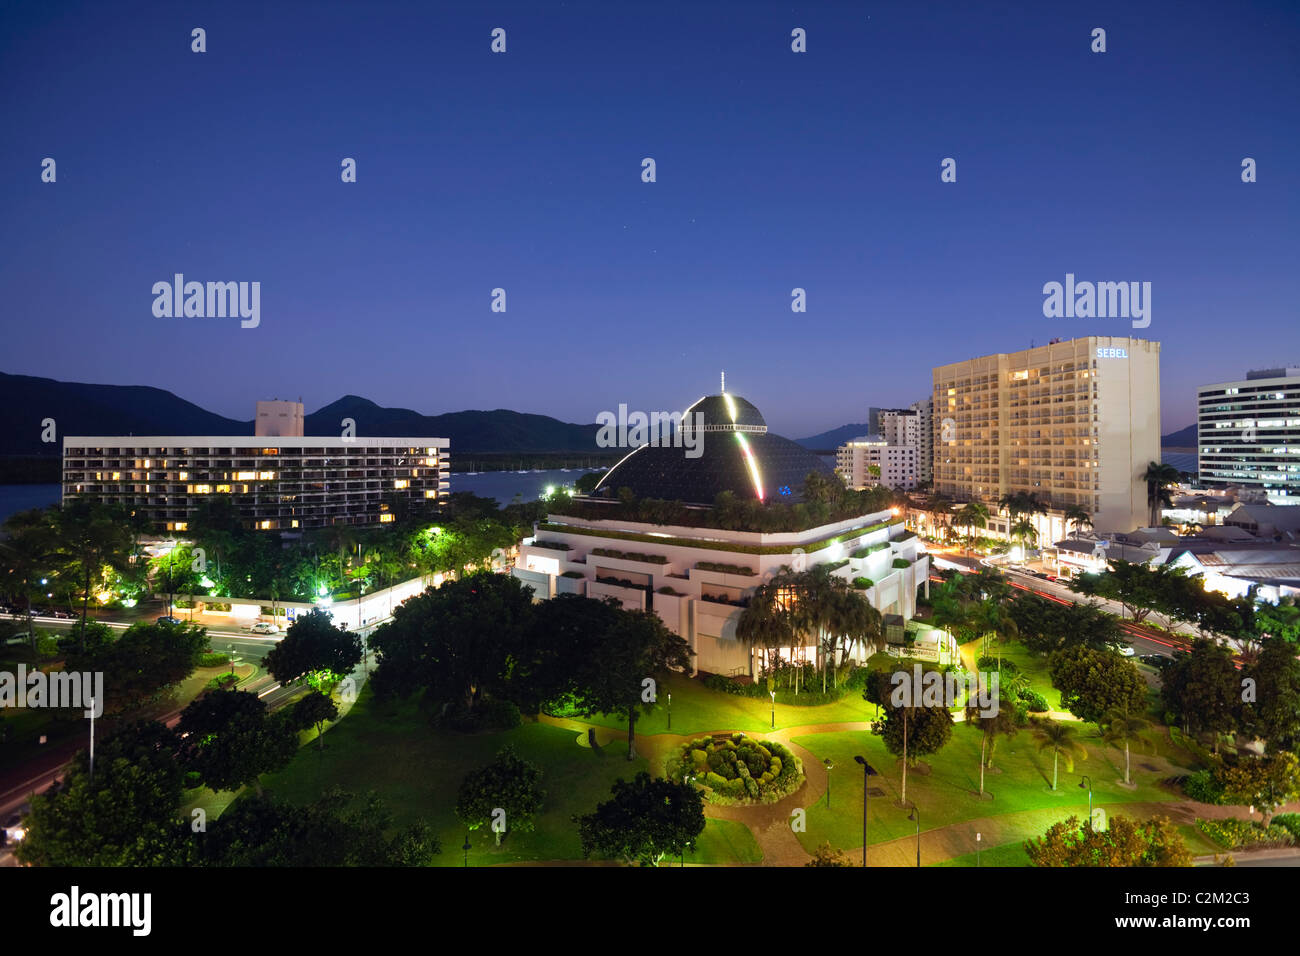 Die Skyline der Stadt einschließlich Hilton Hotel, Reef Hotel Casino und Sebel nachts beleuchtet. Cairns, Queensland, Australien Stockfoto